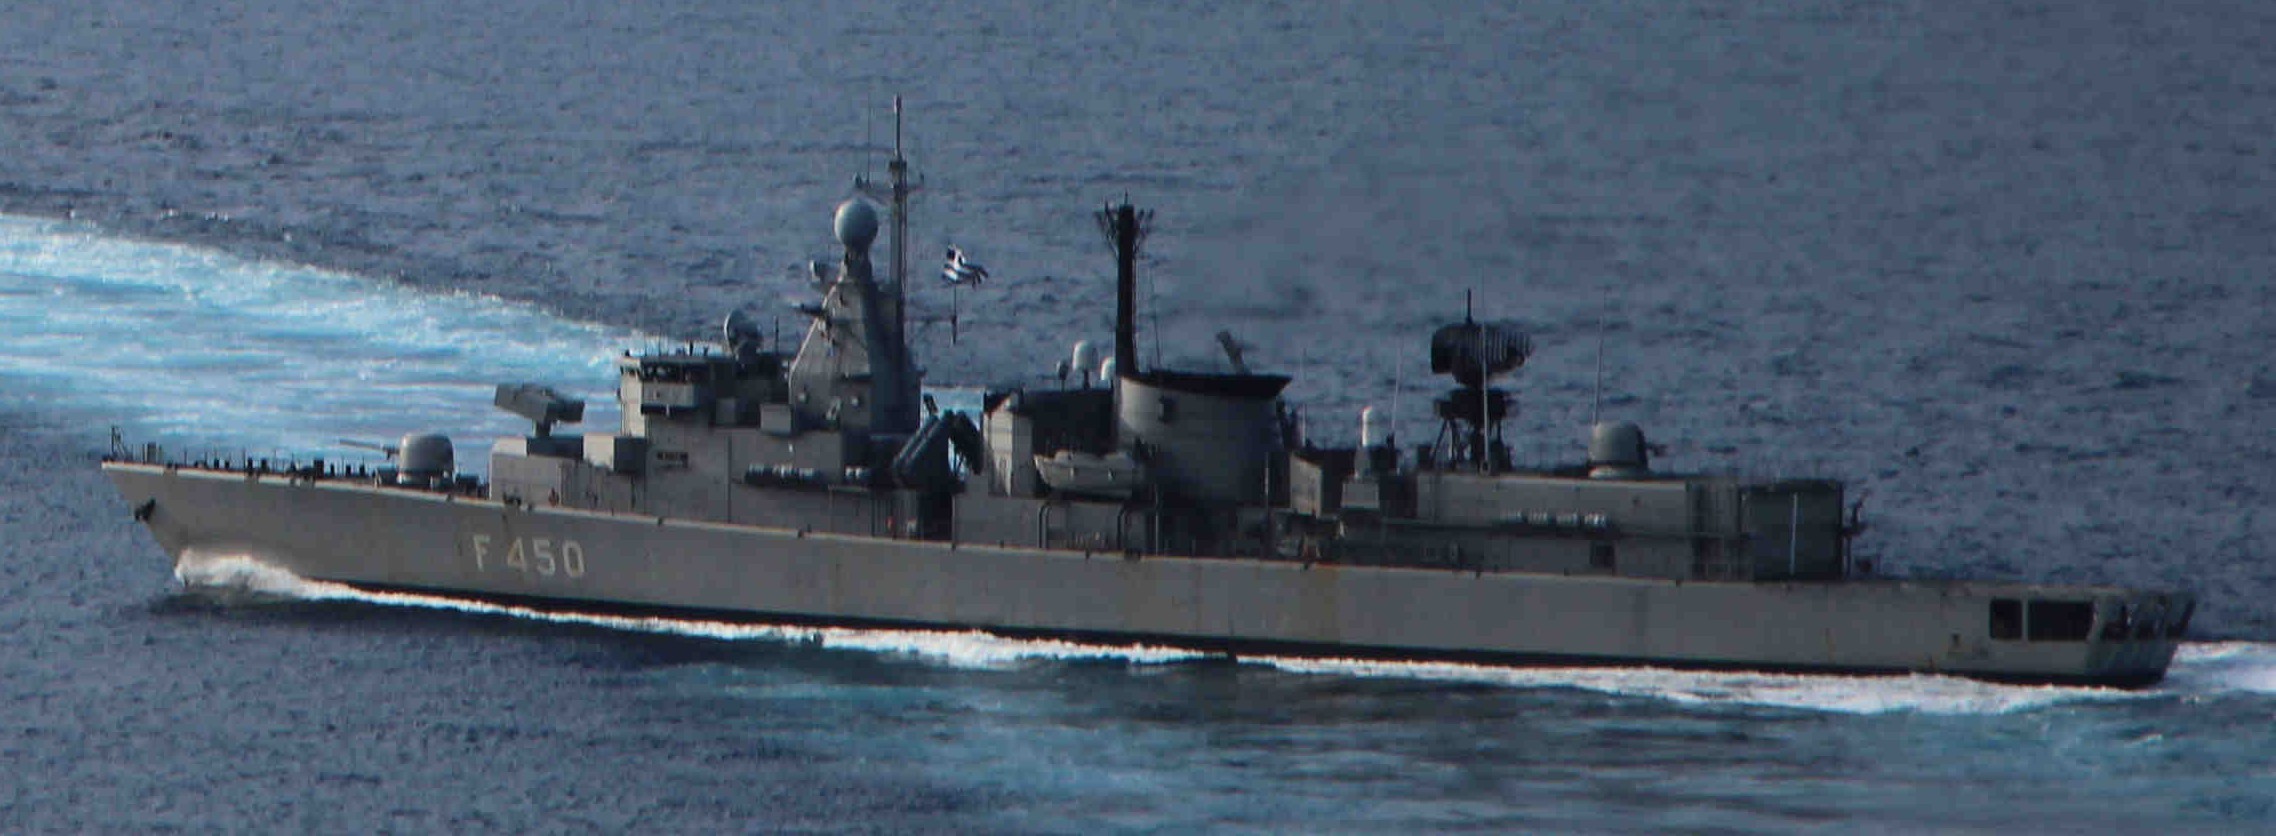 f 450 hs elli class frigate hellenic navy greece 03